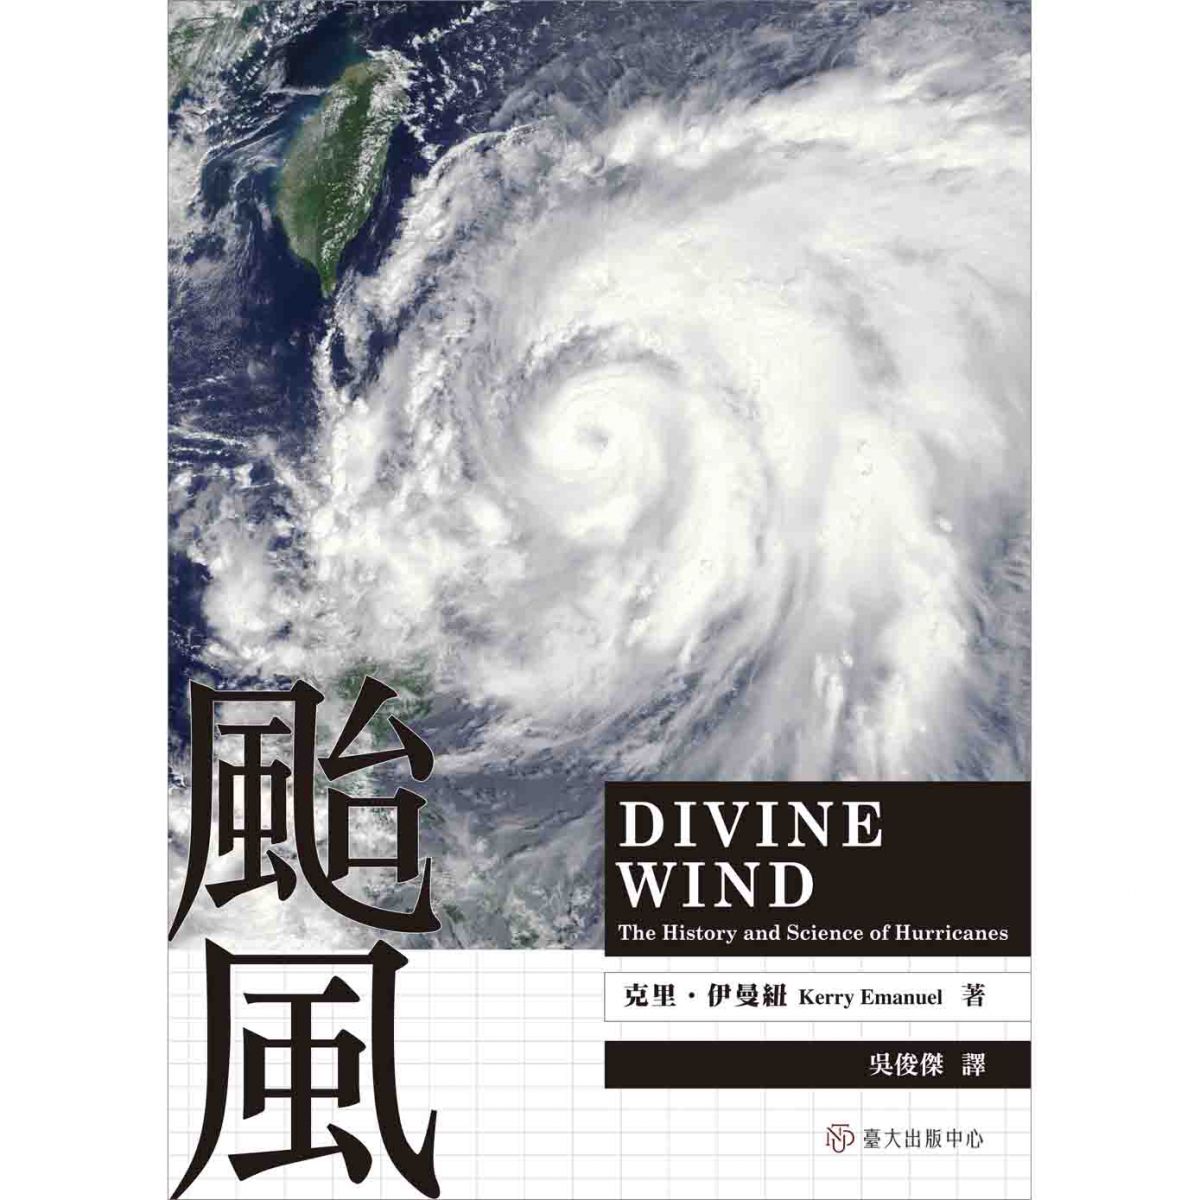 《颱風》系統地解釋颱風的科學知識，一本文圖並茂、橫跨科學與文化的絕佳科普書